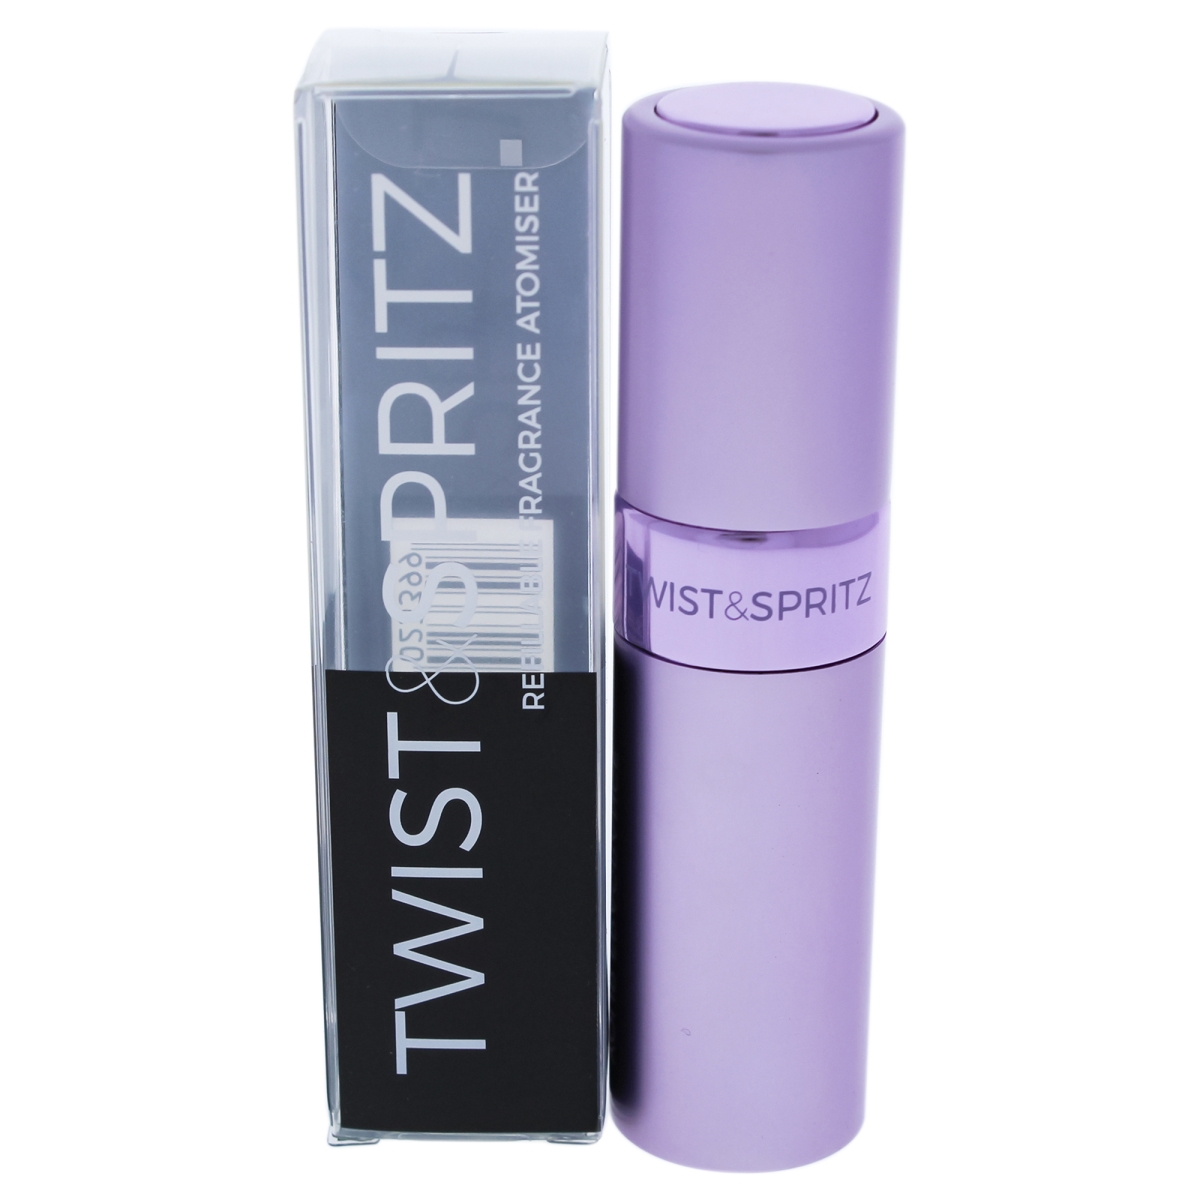 I0091002 Atomiser Refillable Spray For Women - Light Purple - 8 Ml